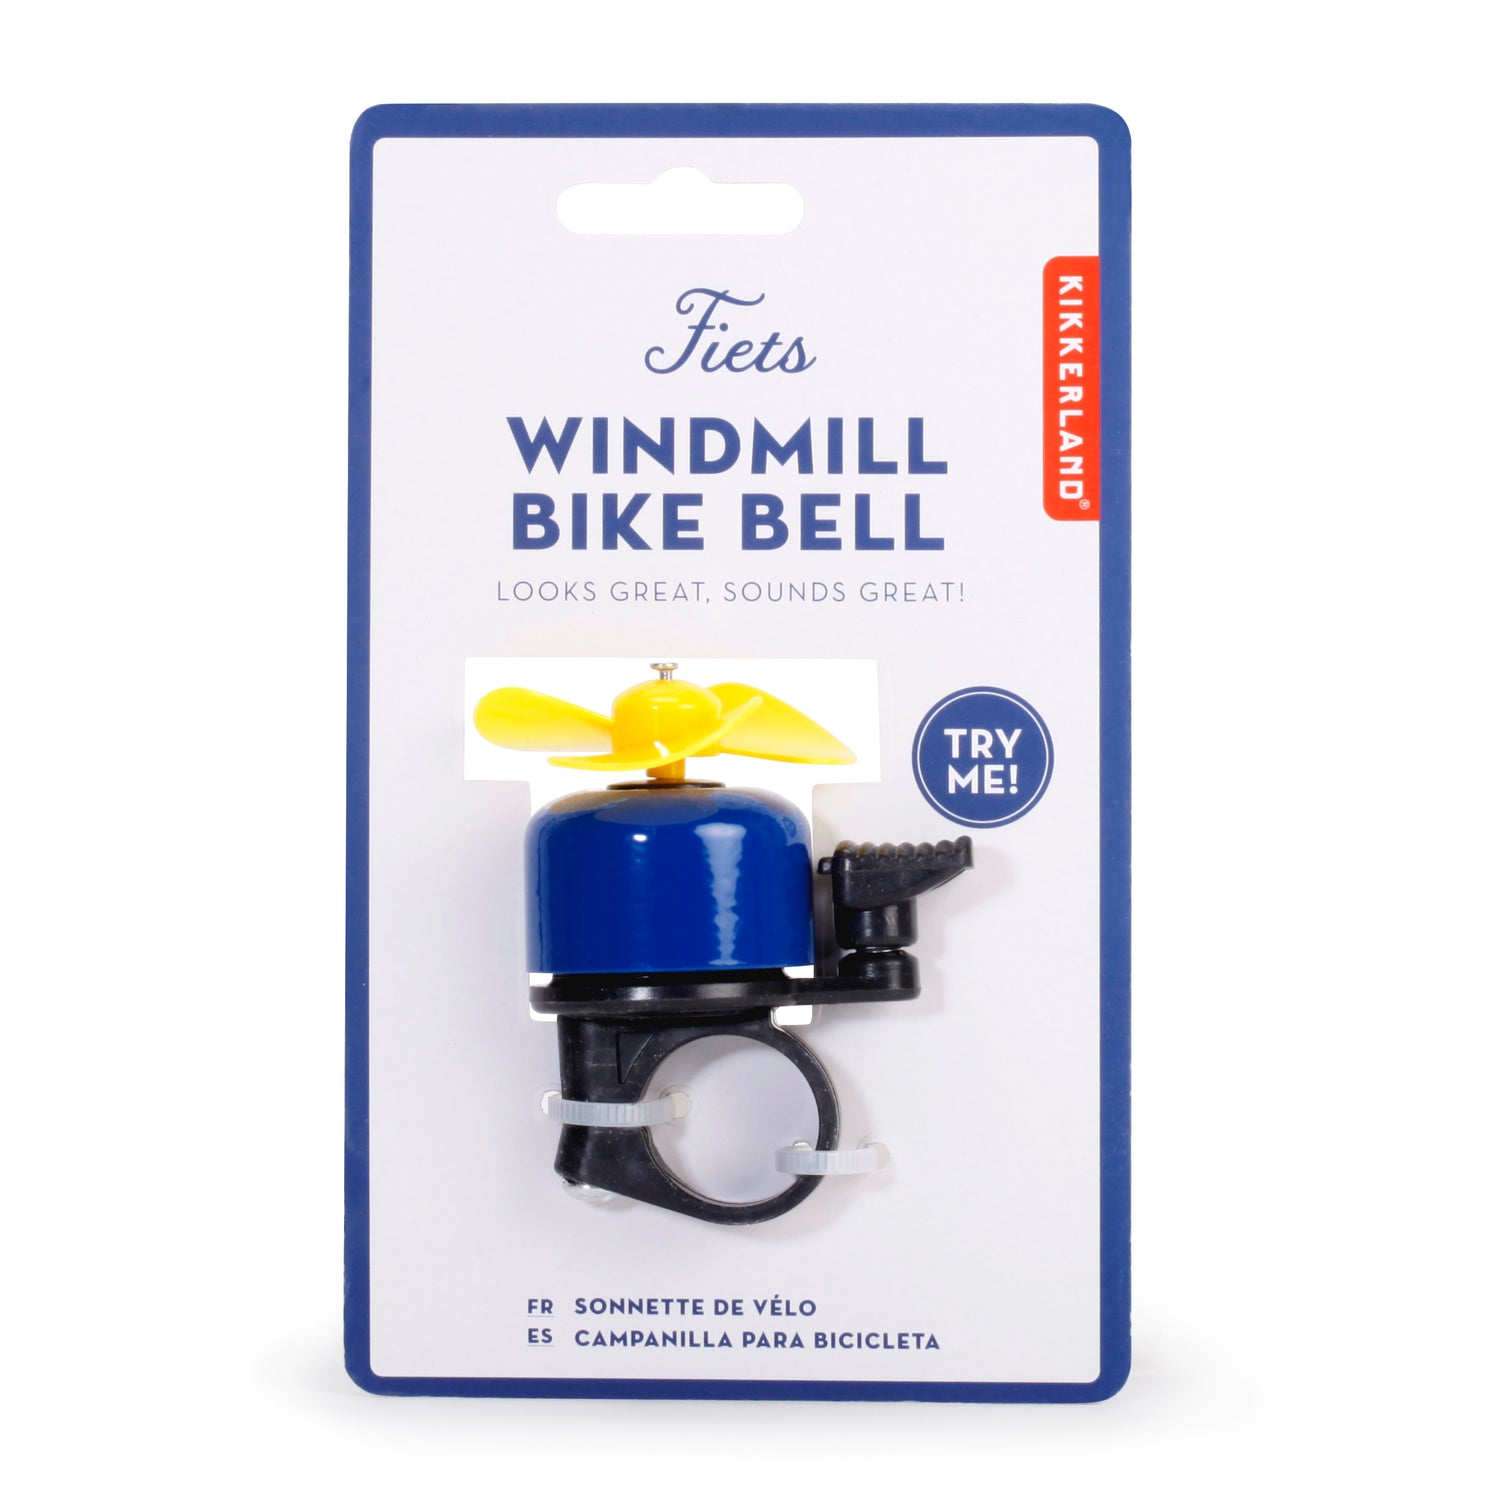 Fiets Windmill Bike Bell